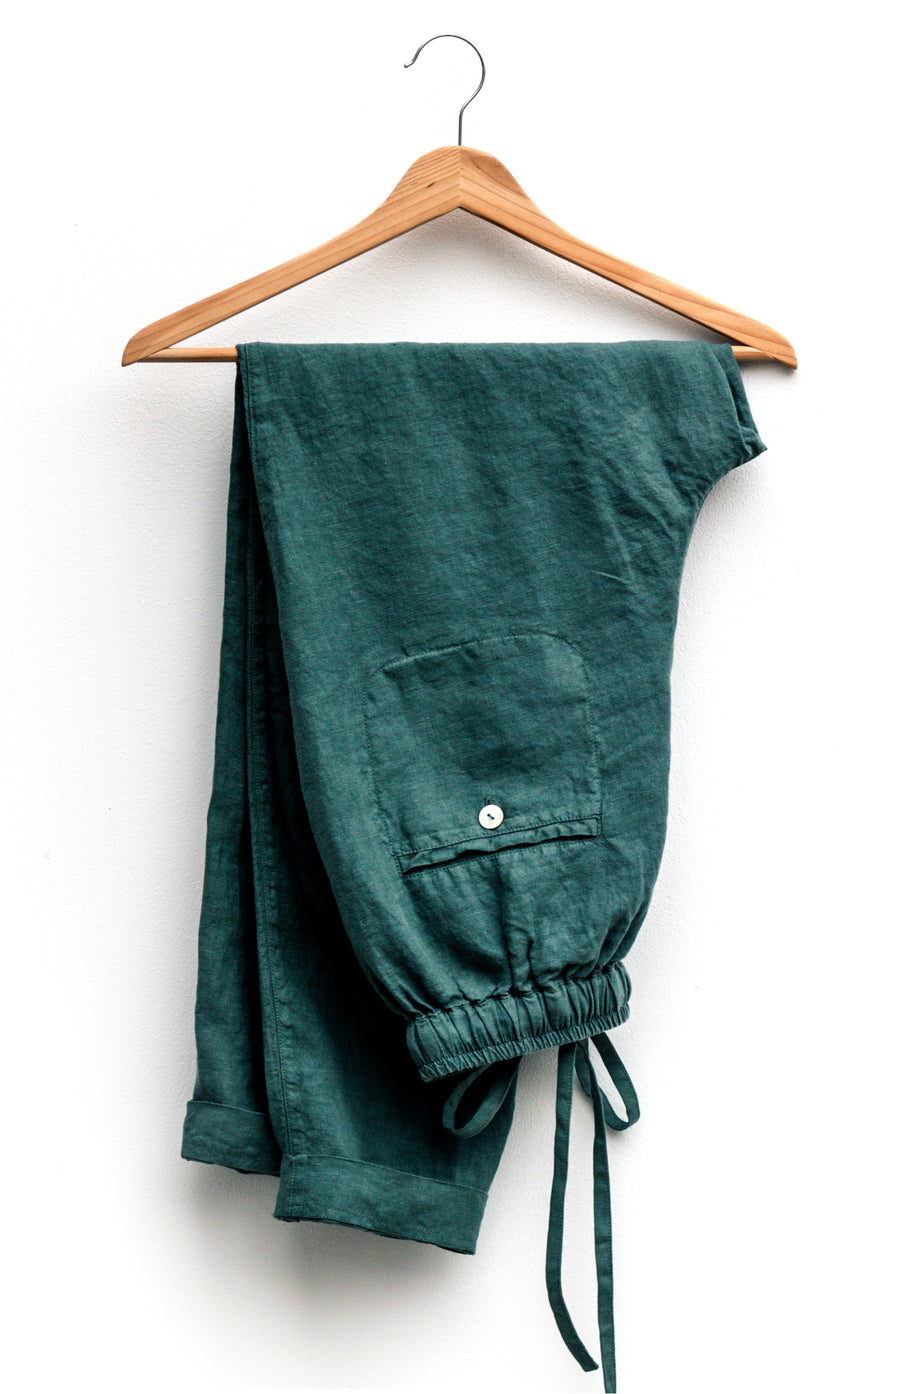 Pohodlné vzdušné kalhoty v odstínu Sagebrush Green